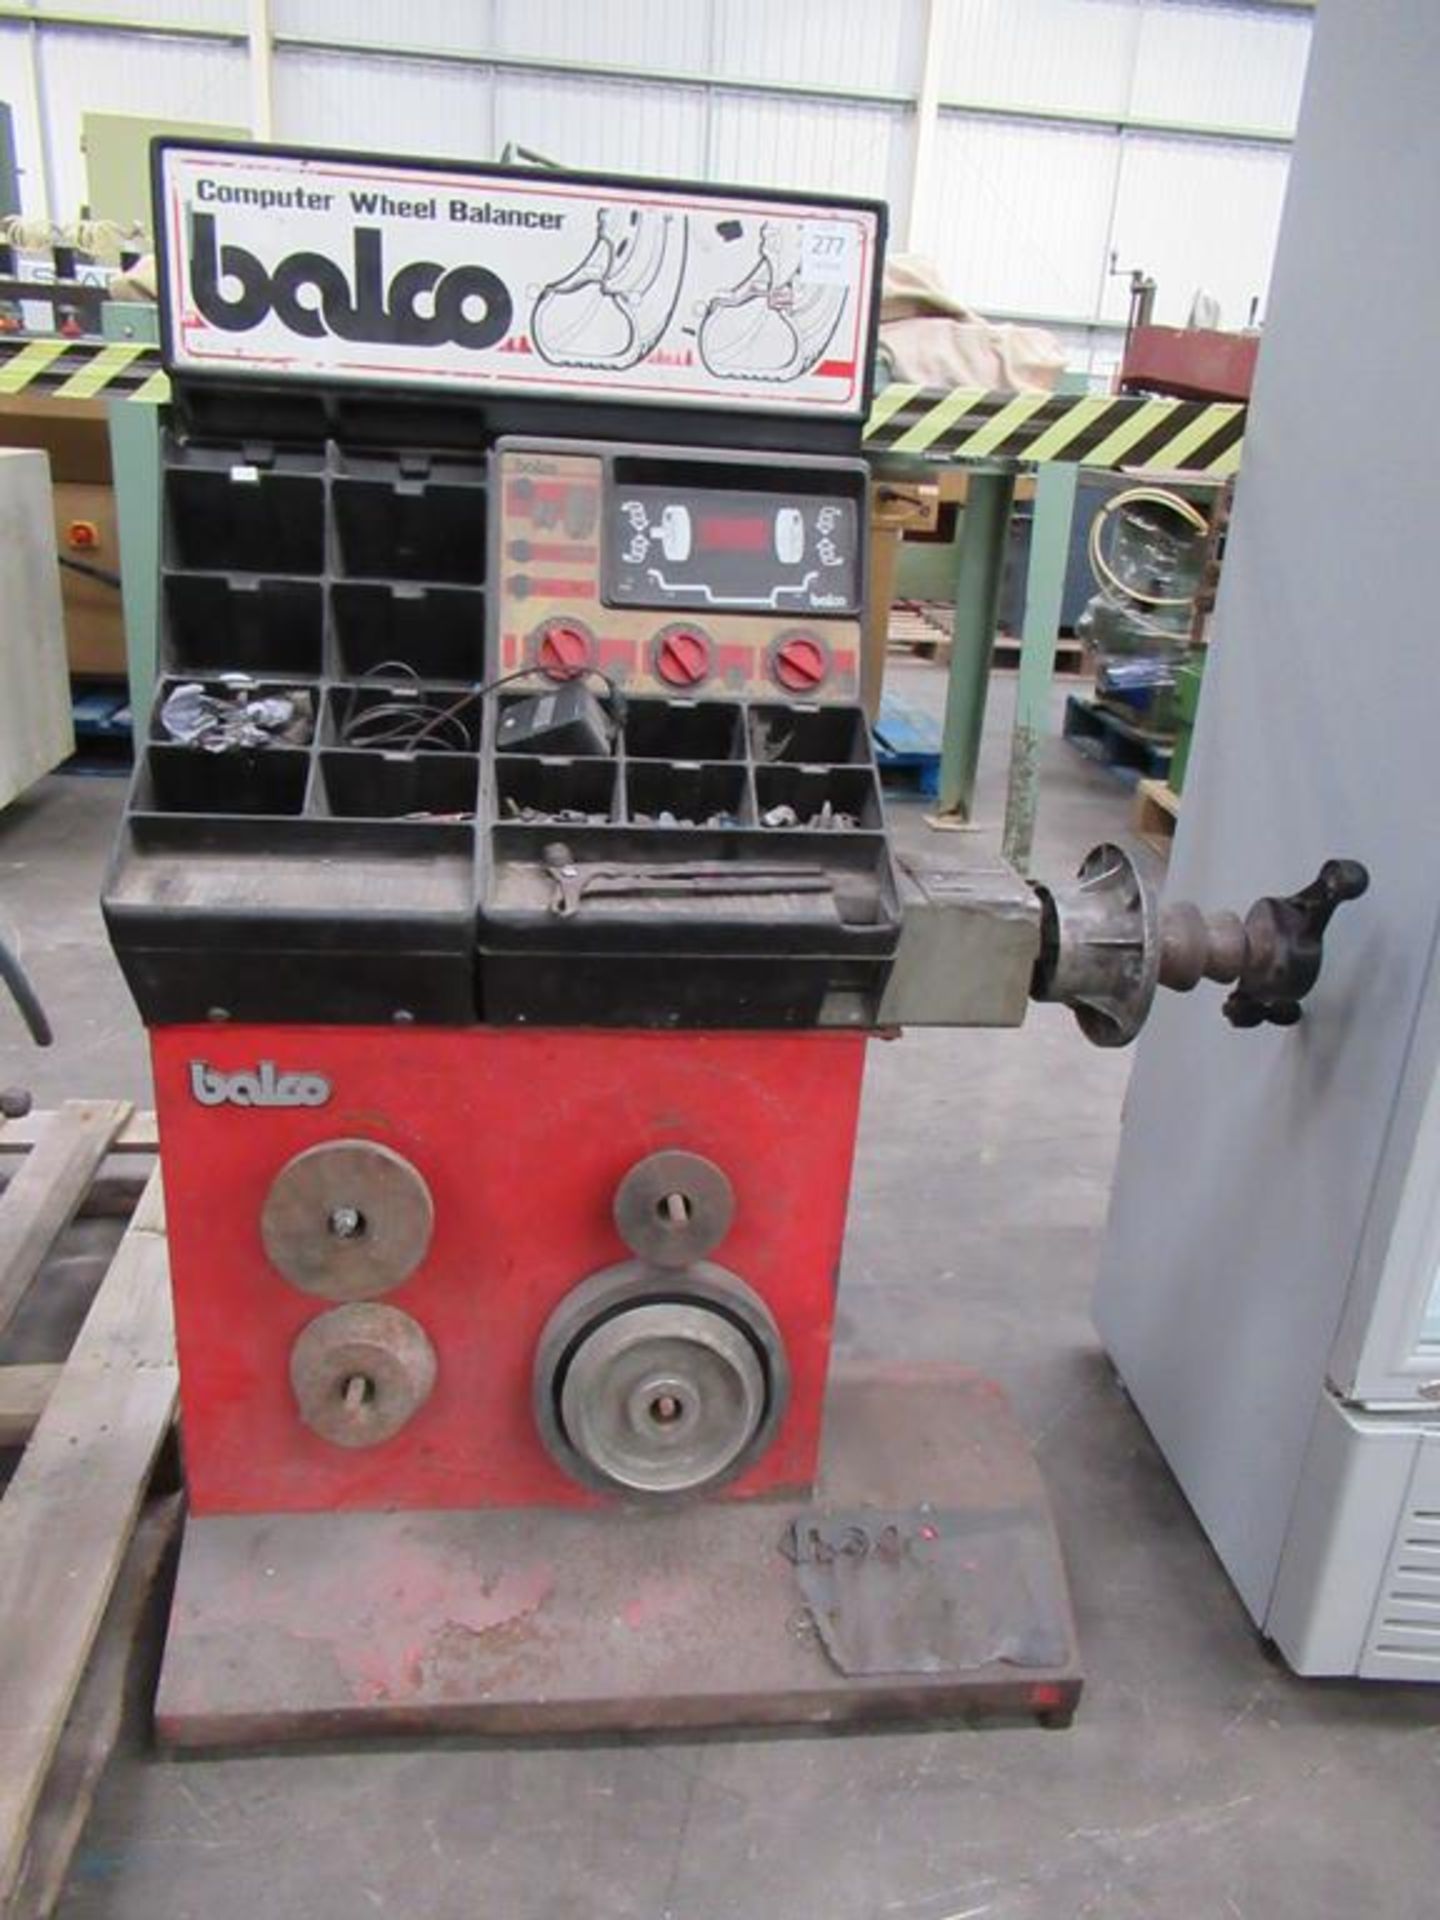 A Balco Computer Wheel Balancer